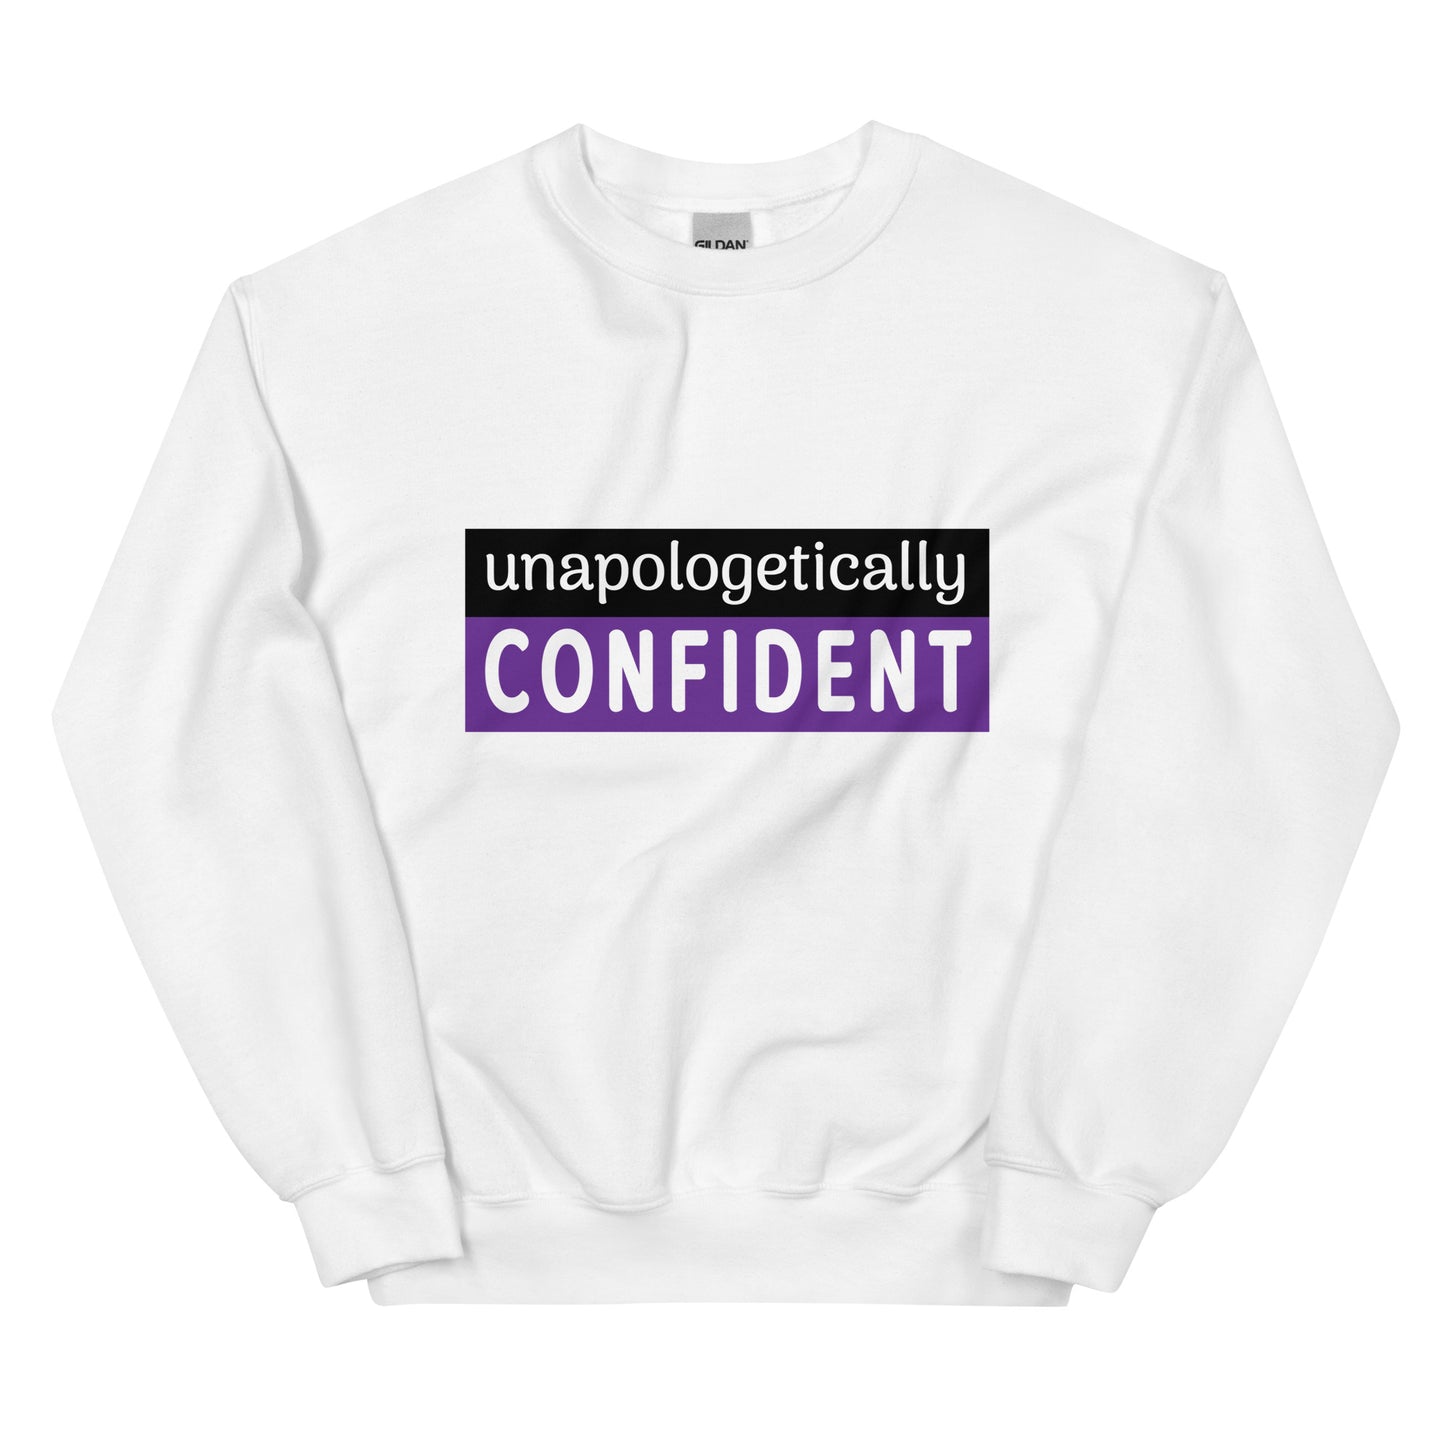 Unapologetically Confident Sweatshirt